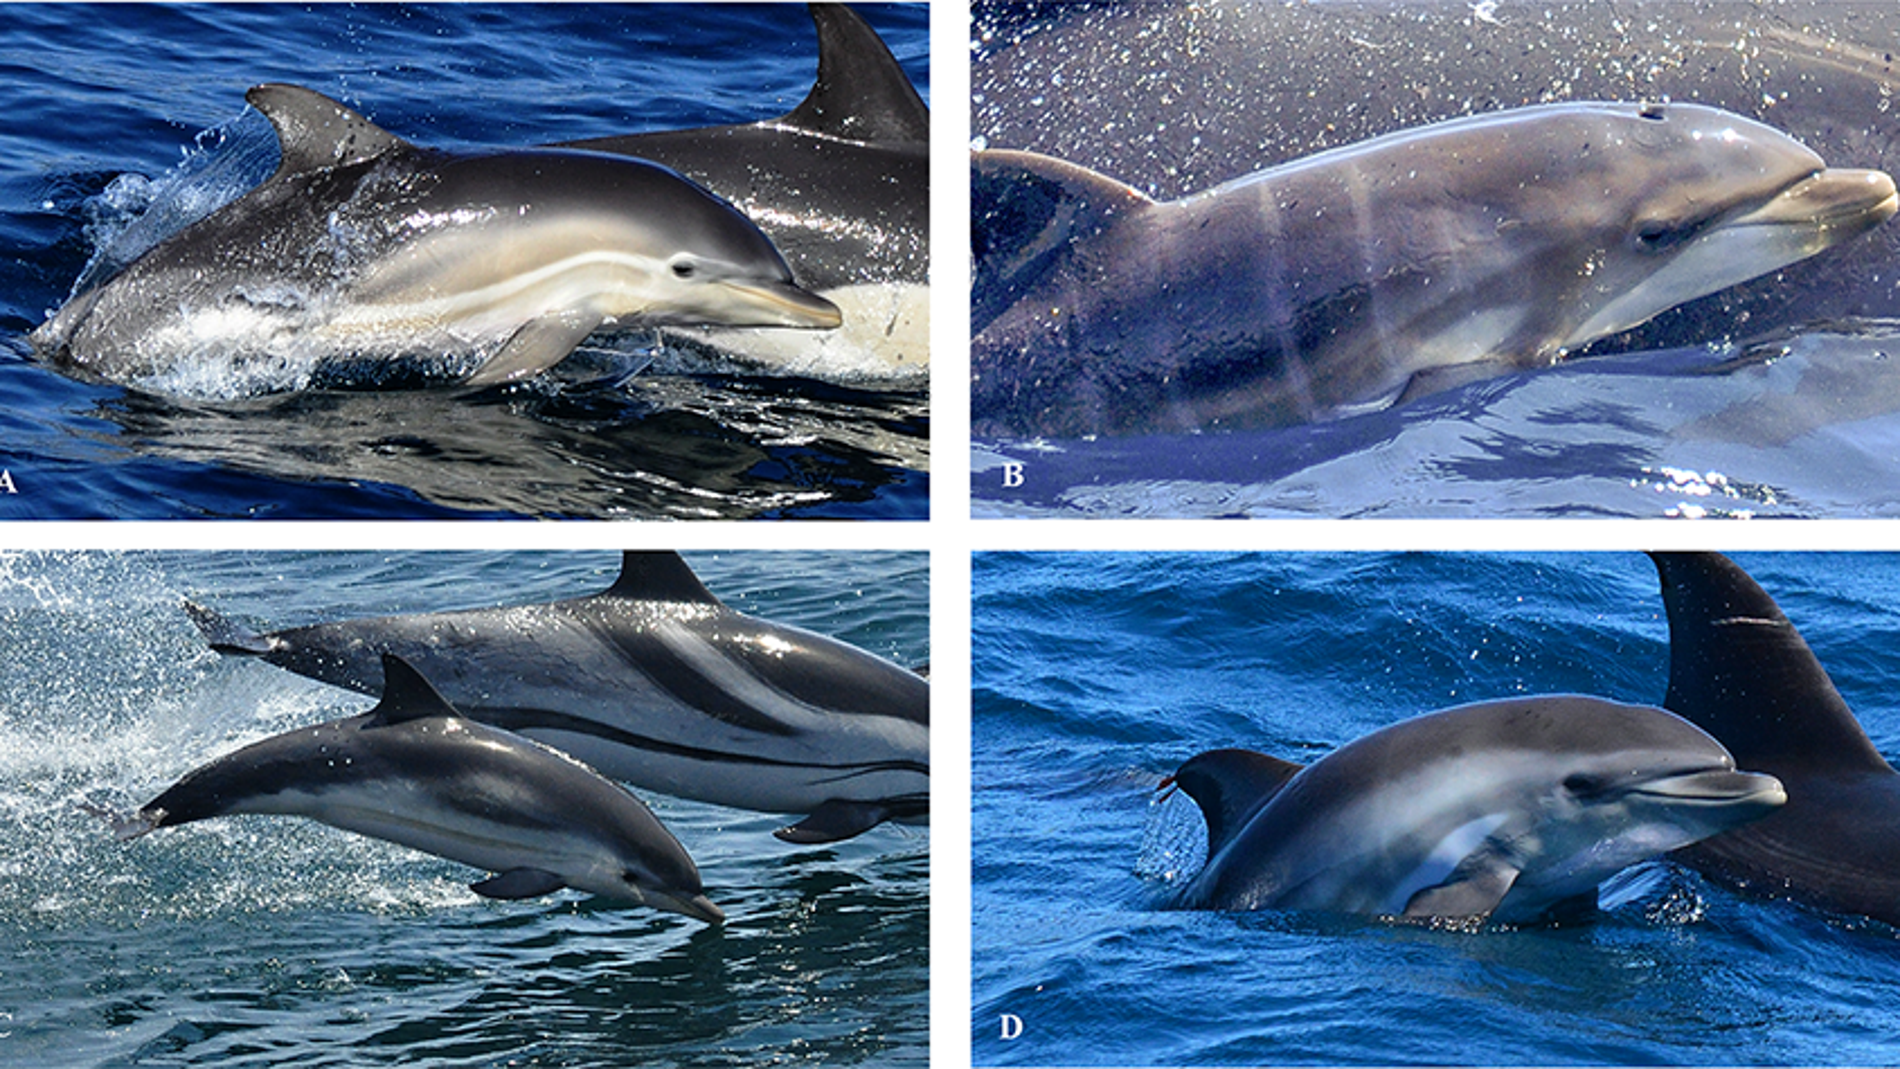 Hallan por primera vez en el mundo un ejemplar de delfin hibrido en alta mar